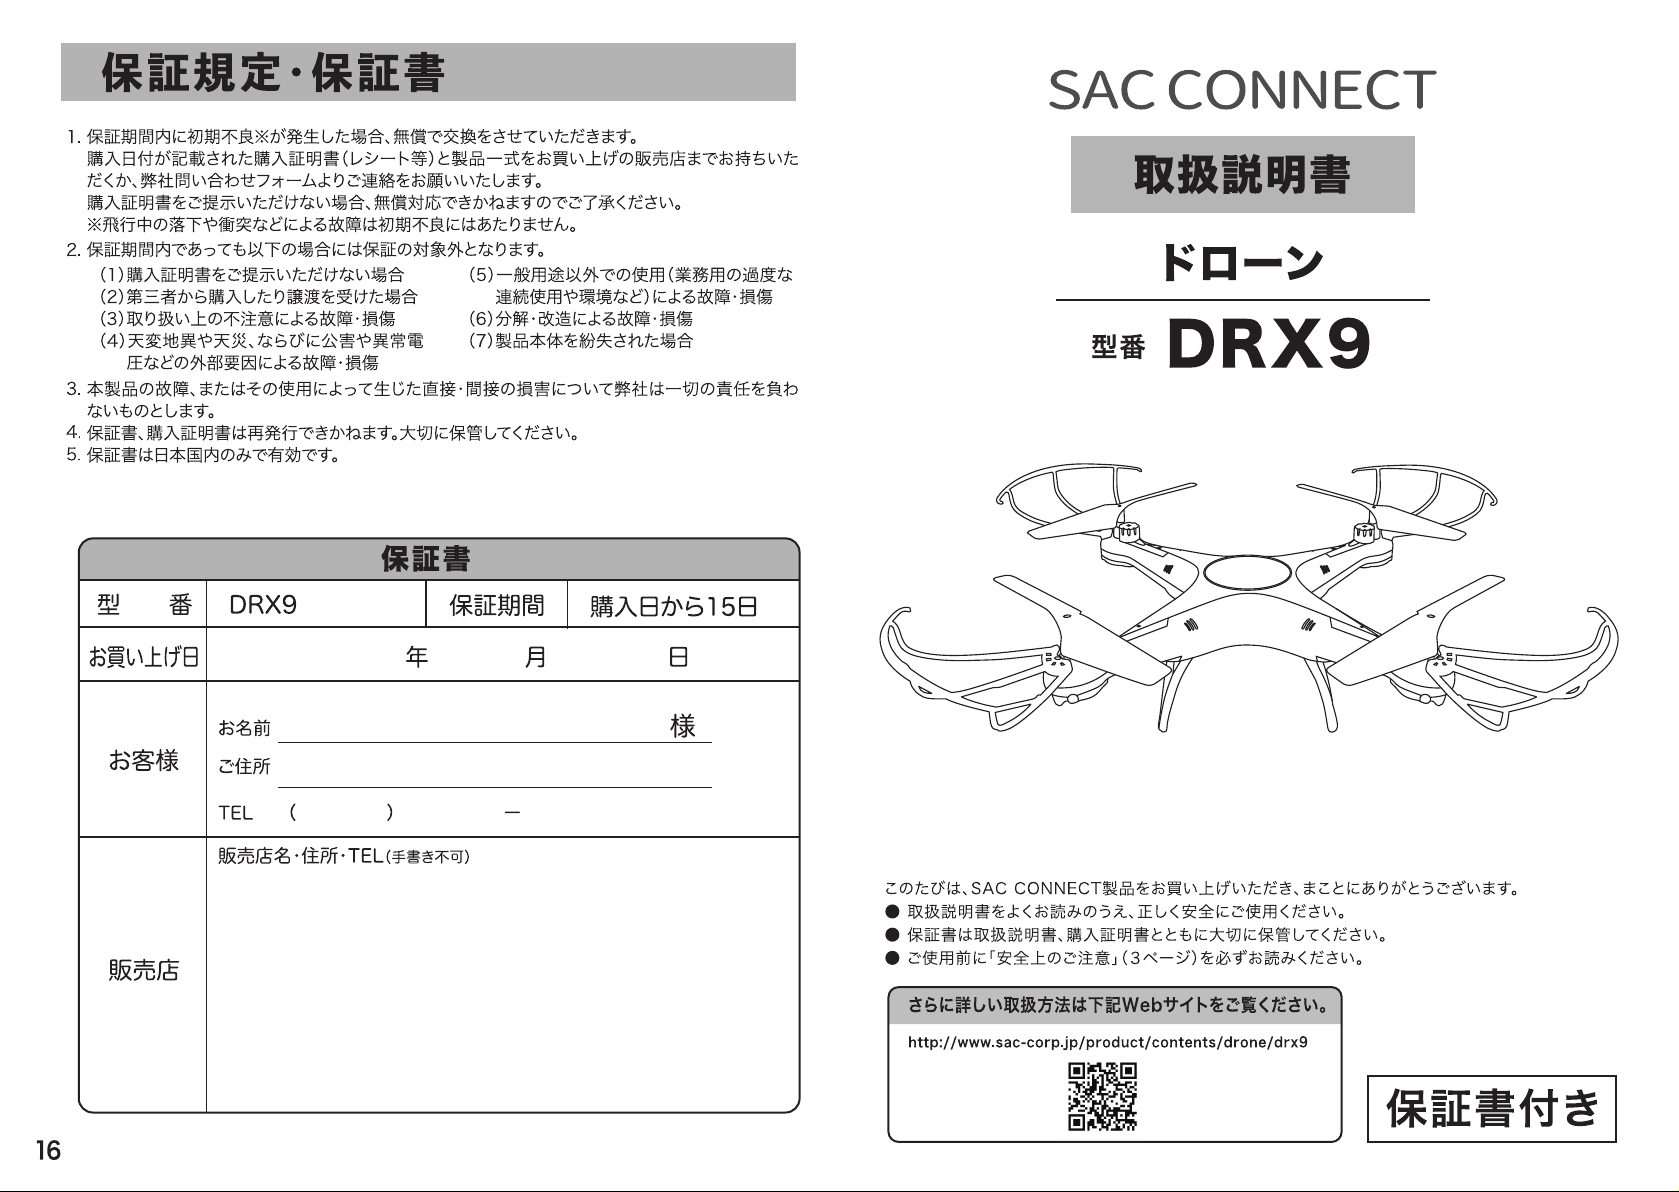 説明書 SAC Connect DRX9 ドローン